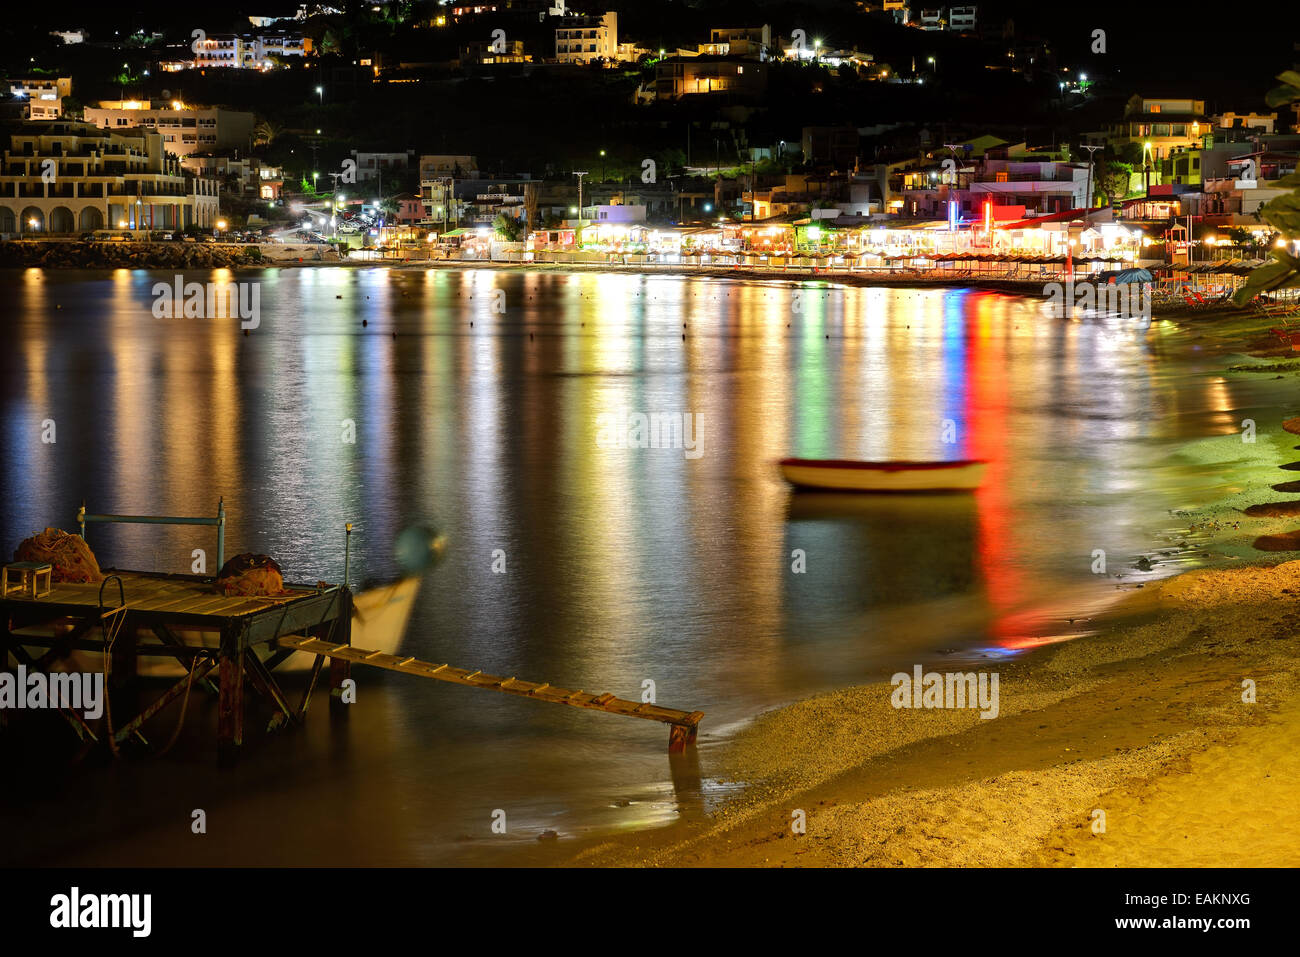 Der Strand, Tavernen und Bars in Nachtbeleuchtung, Insel Kreta, Griechenland Stockfoto